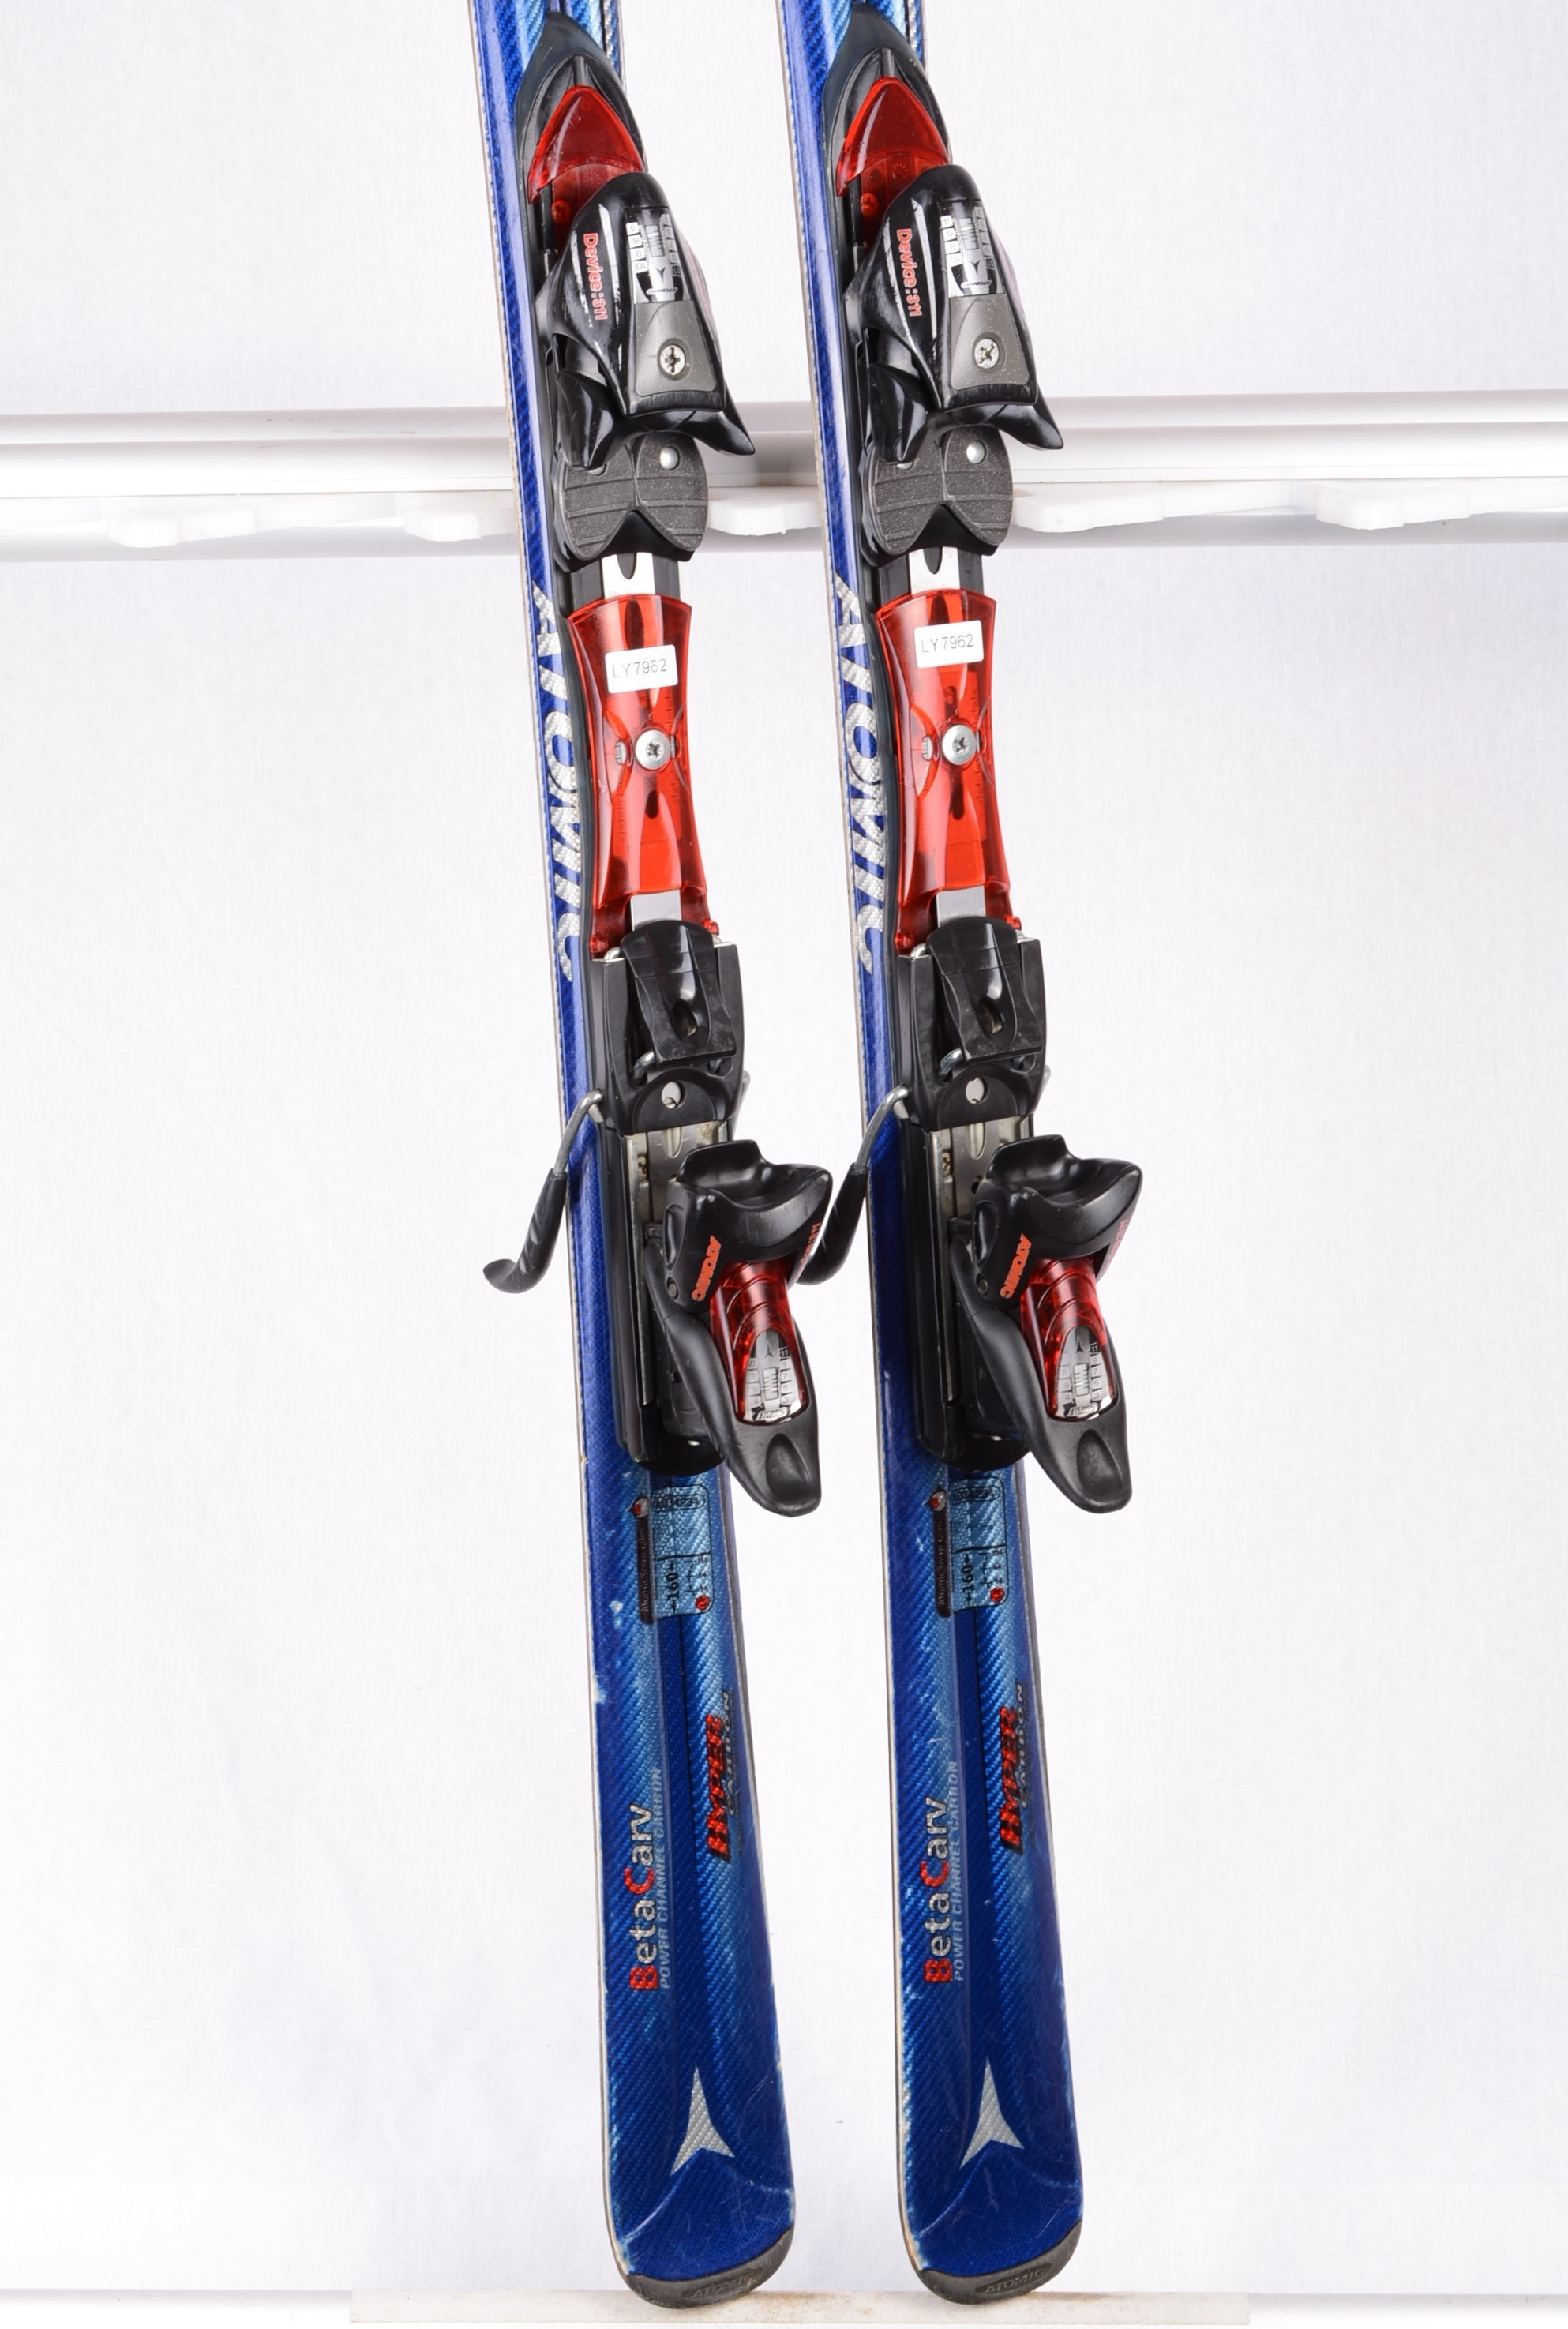 skis C:9 BETA HYPER CARBON + Device 311 - Mardosport.com